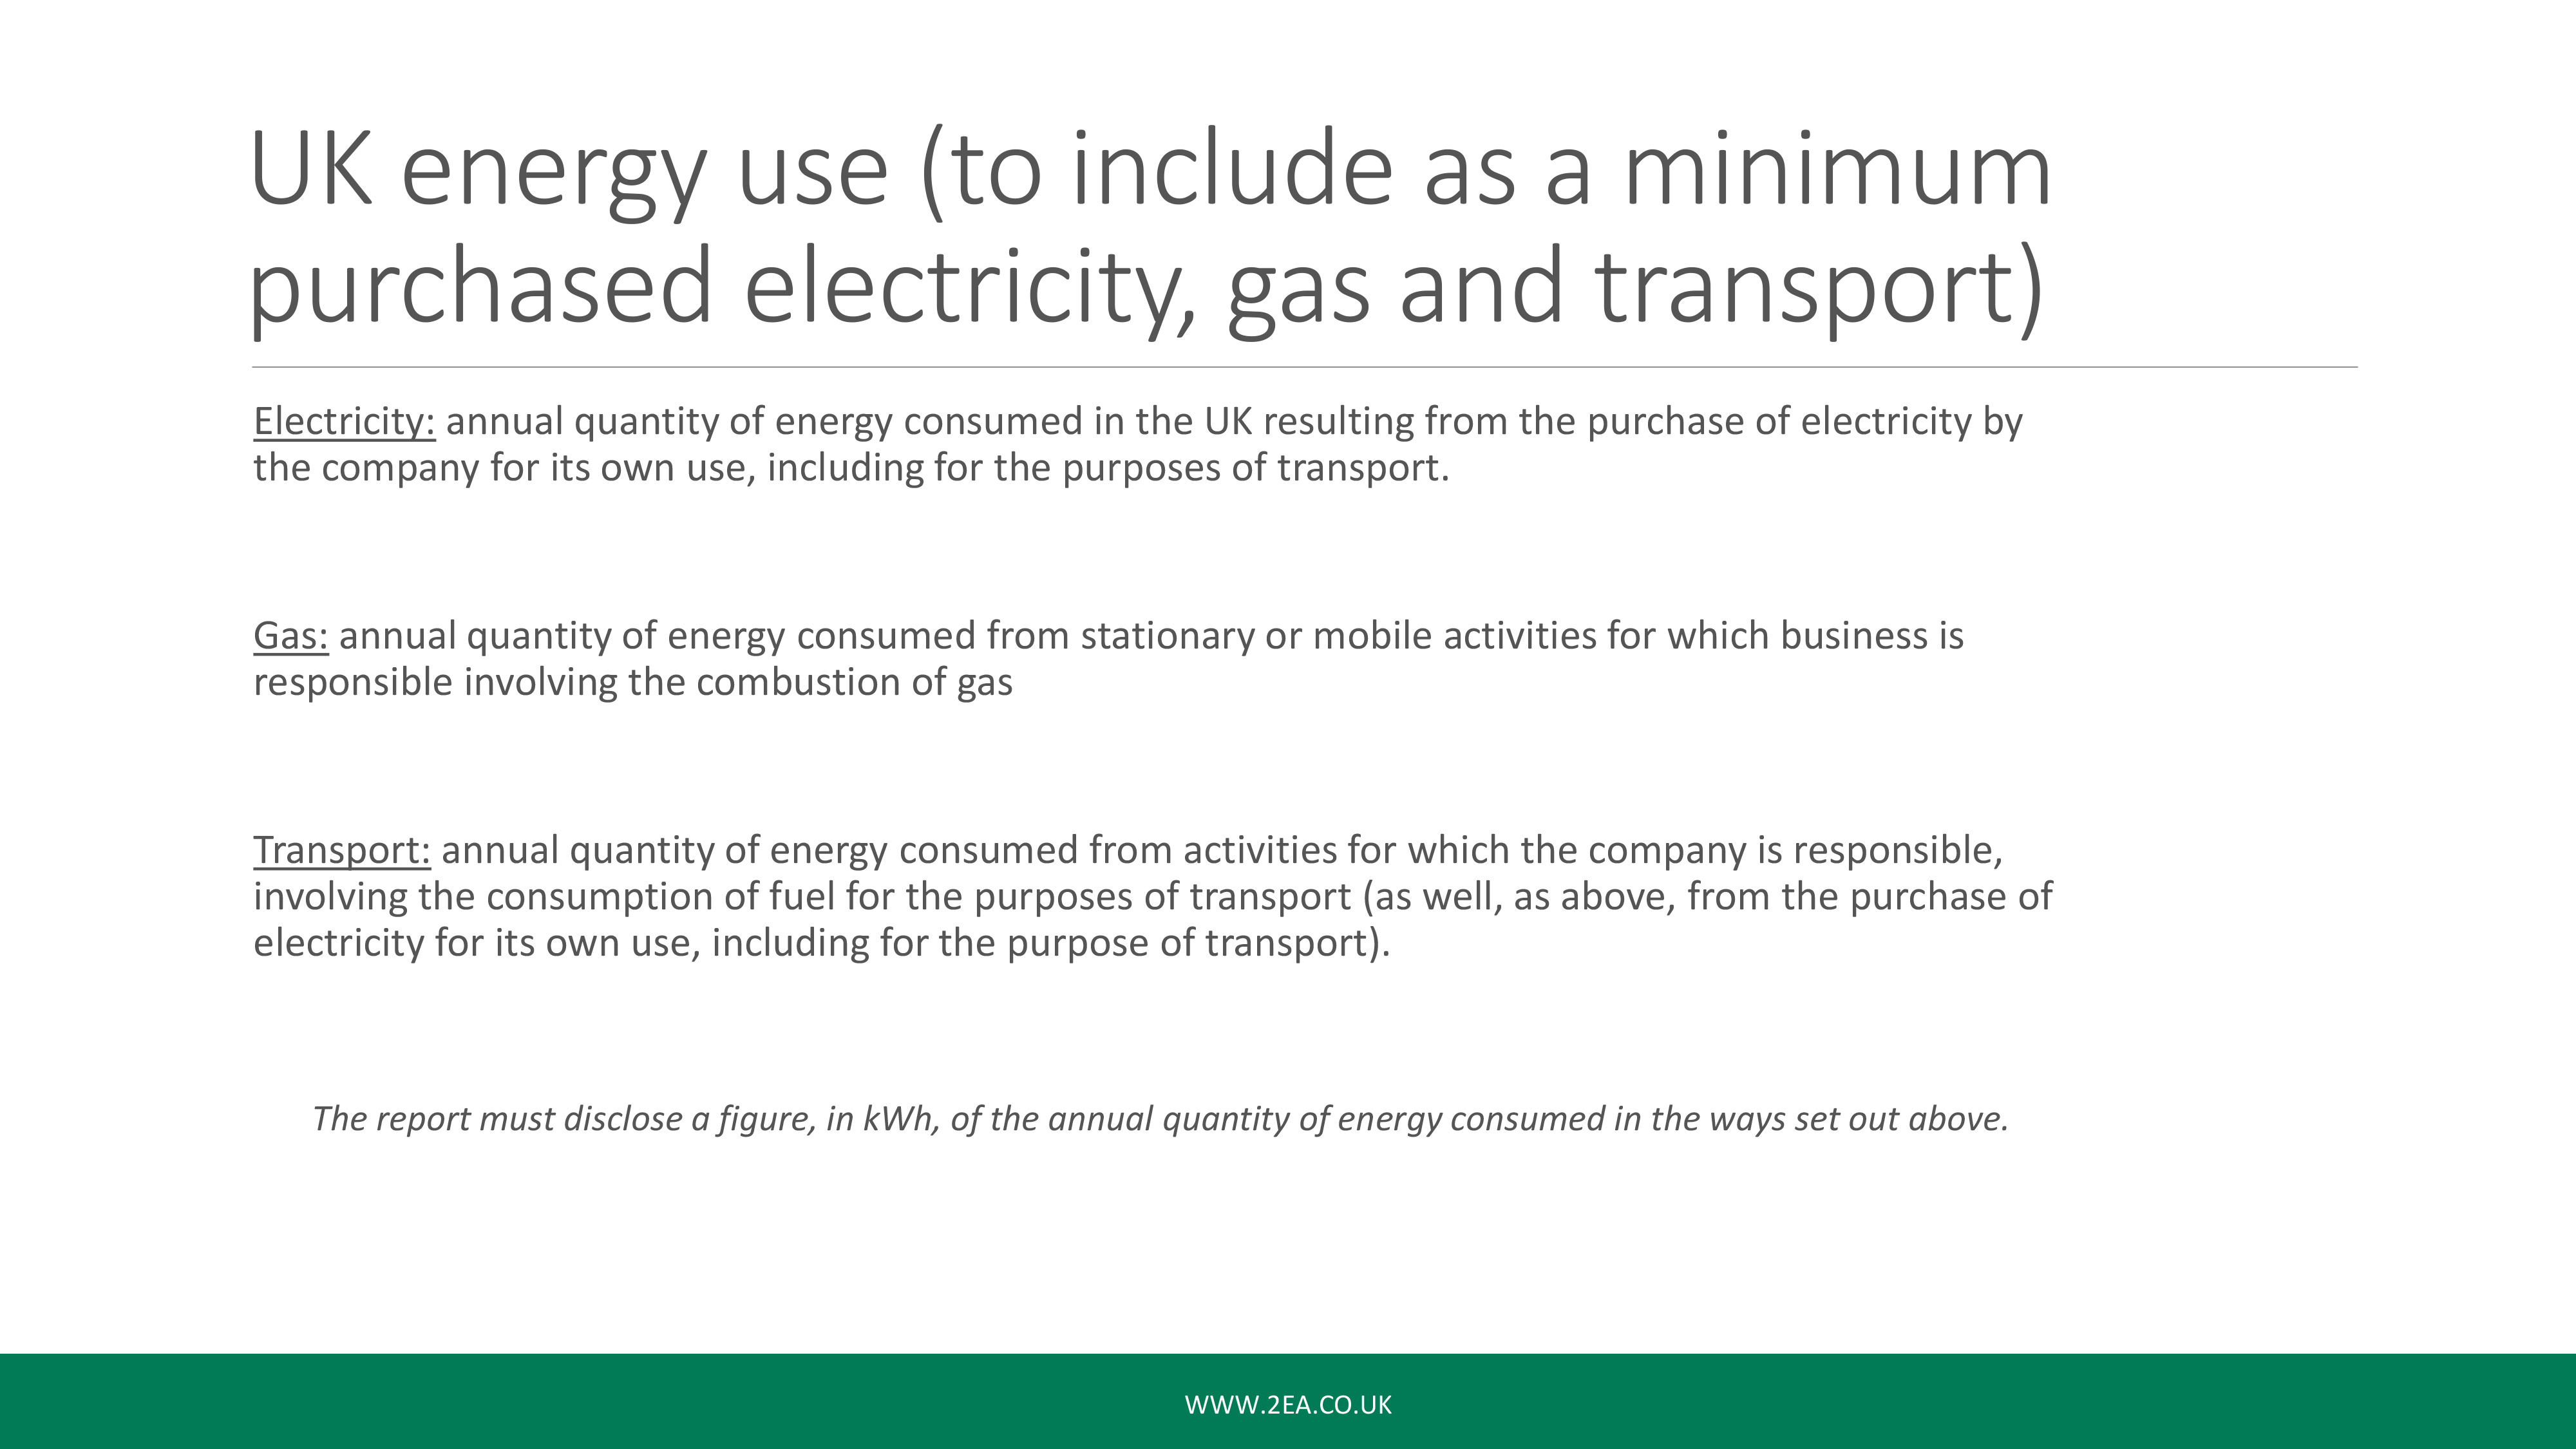 SECR Webinar: UK Energy Use